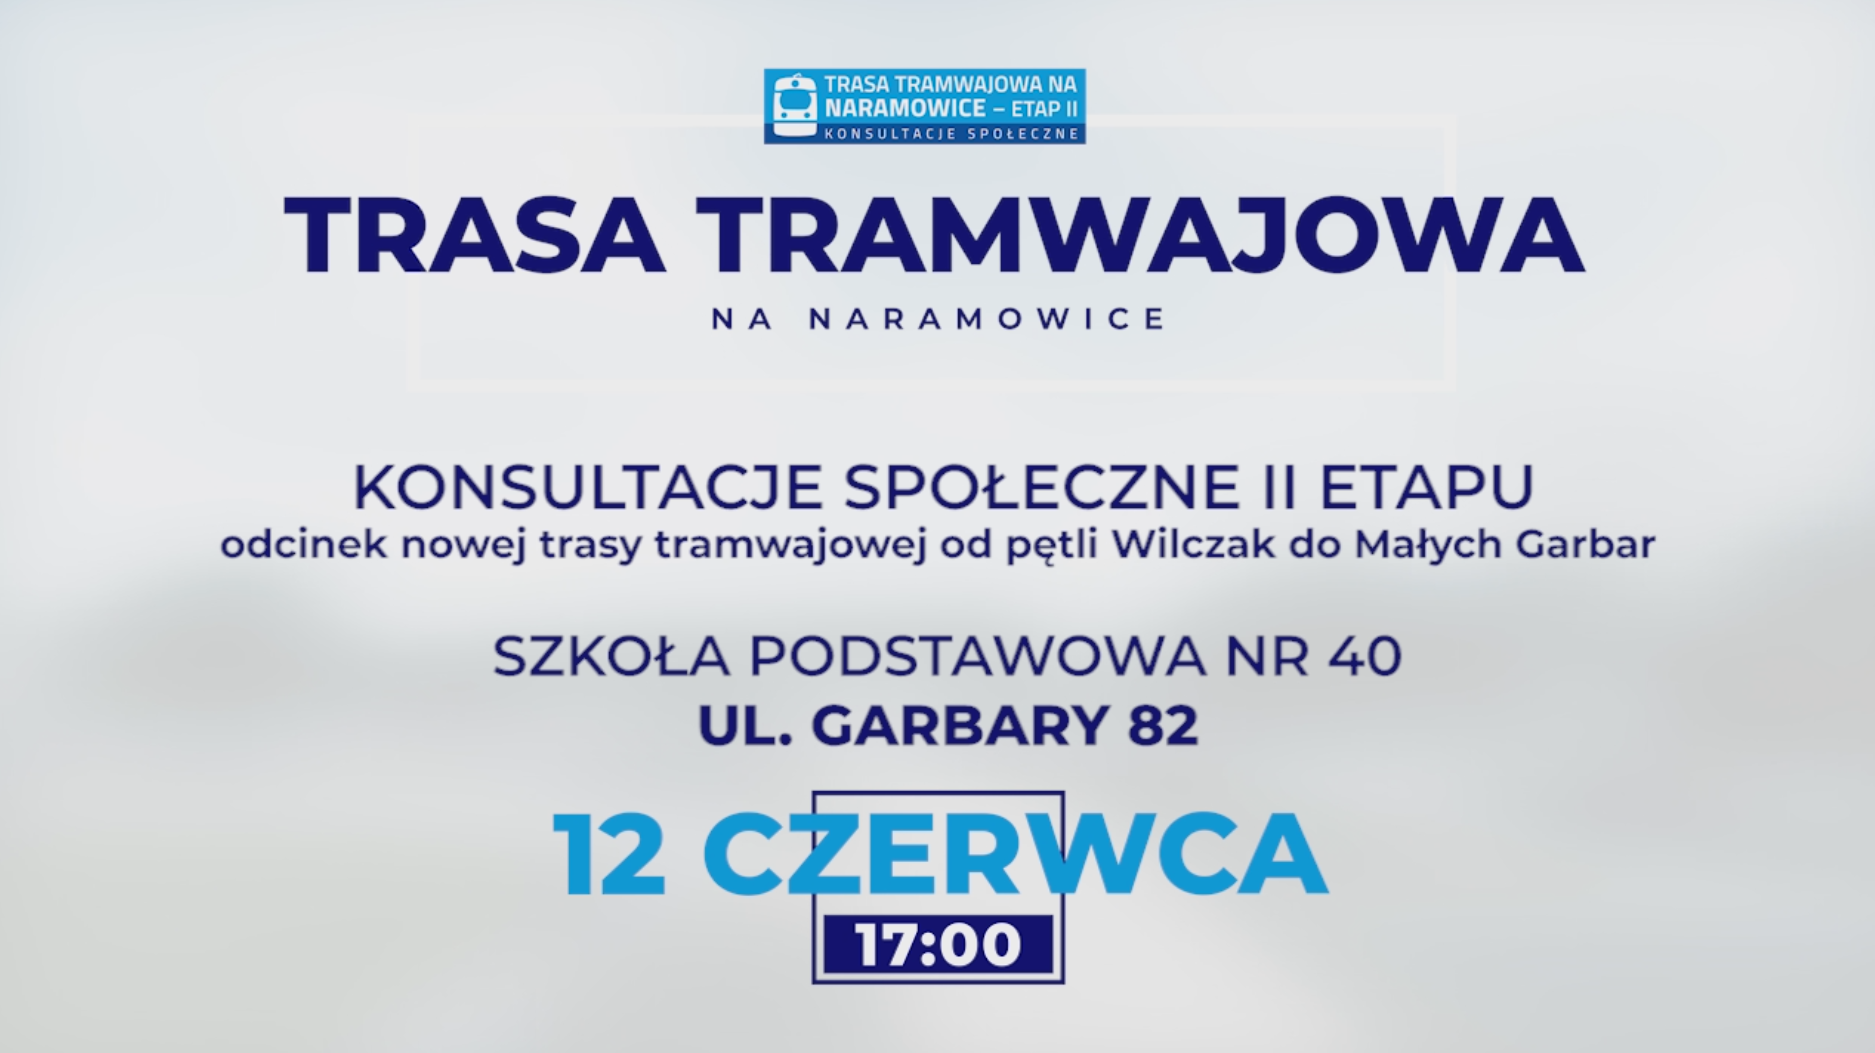 Trasa tramwajowa na Naramowice - konsultacje społeczne II etapu